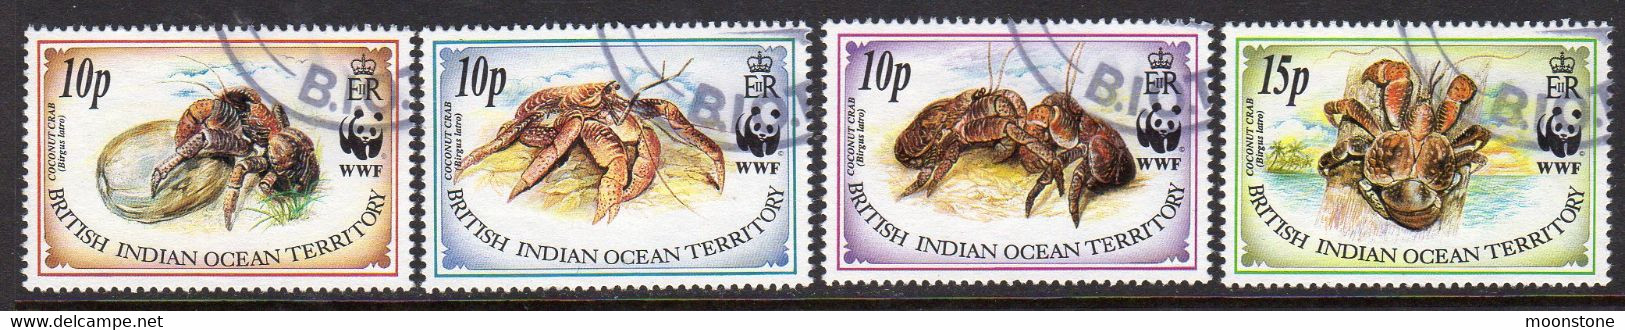 British Indian Ocean Territory BIOT 1993 Coconut Crab Set Of 4, Used, SG 132/5 (A) - Brits Indische Oceaanterritorium